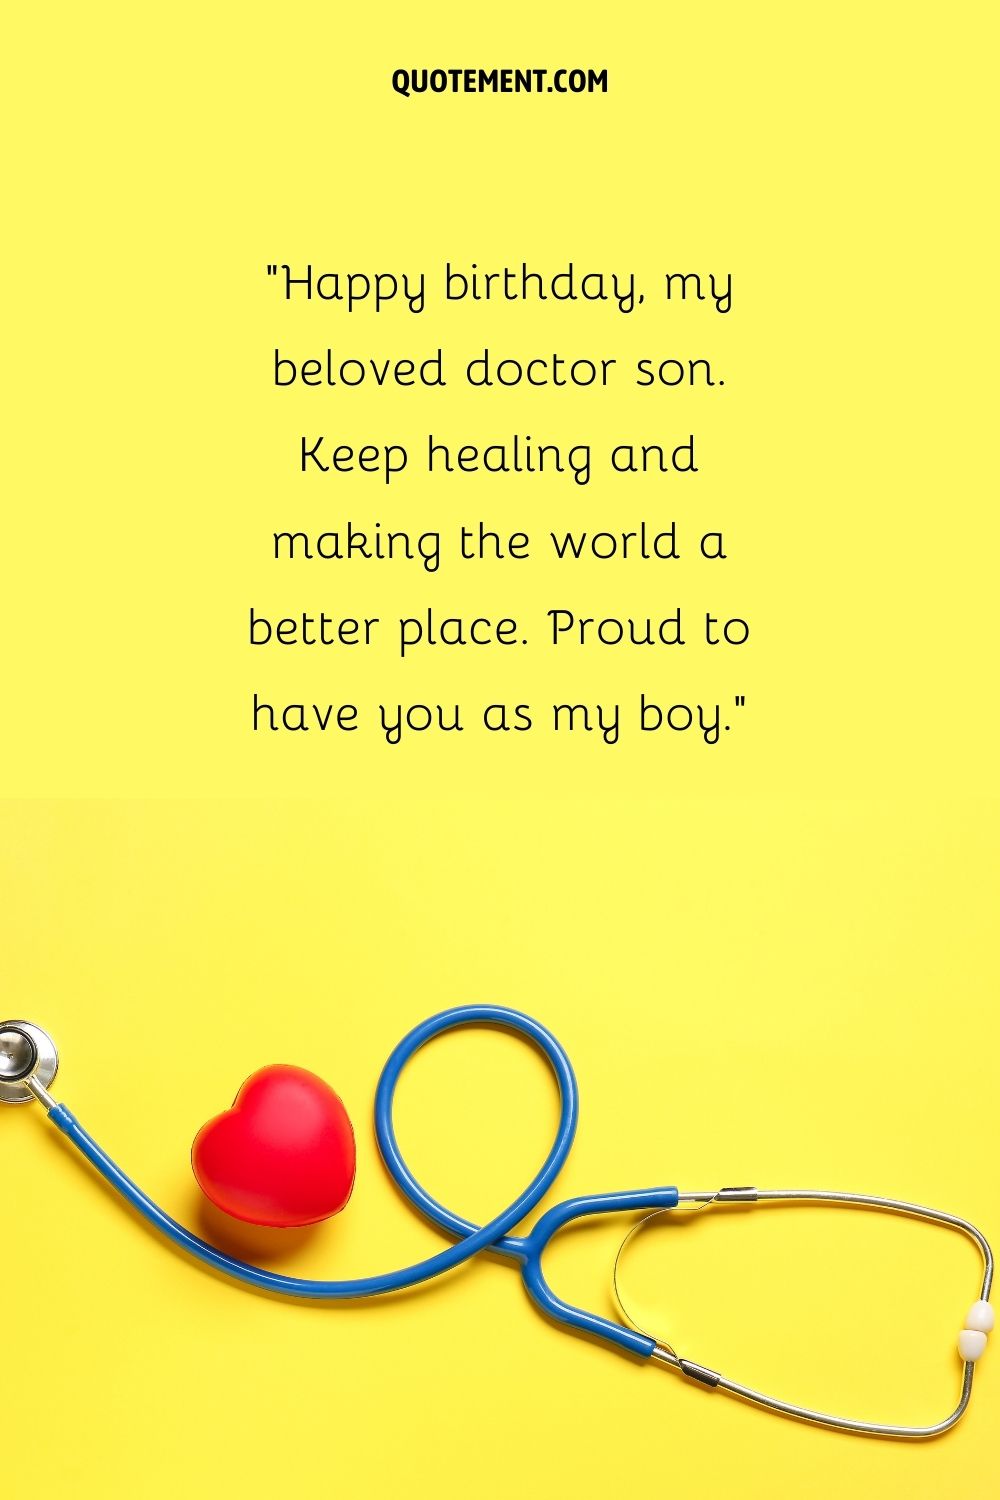 estetoscopio sobre una superficie amarilla que representa el cumpleaños del hijo médico